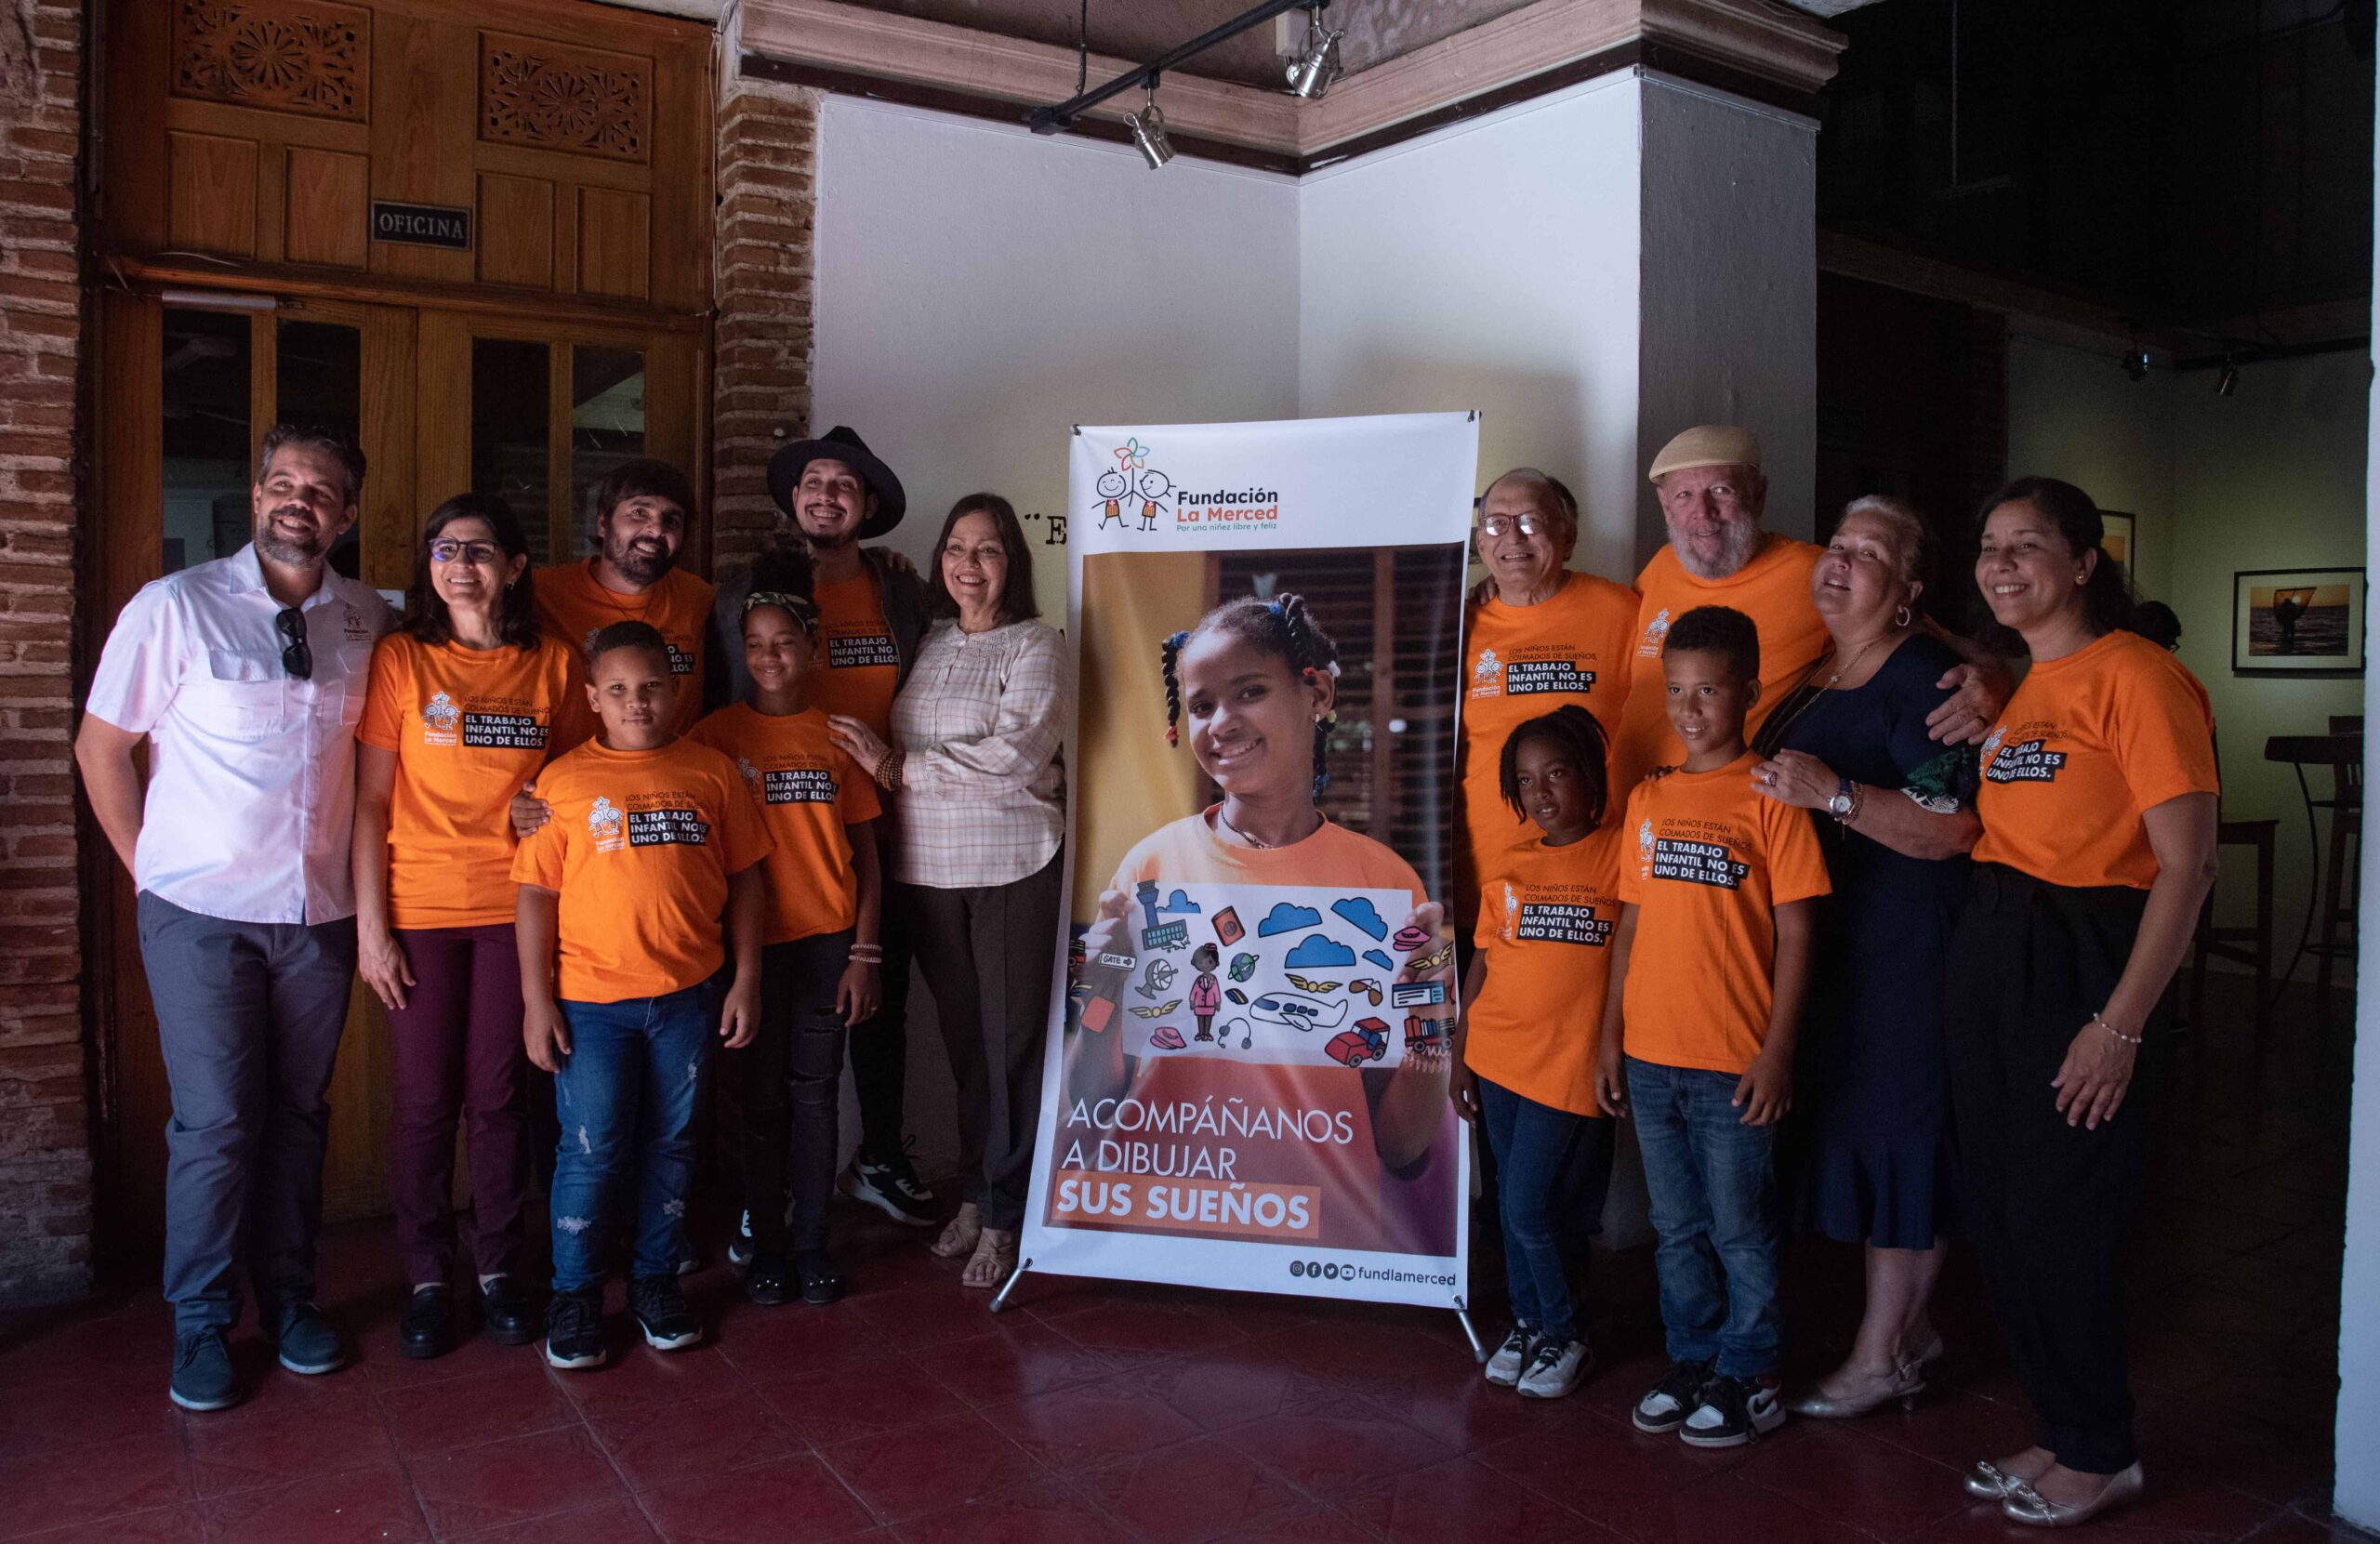 Fundación La Merced presenta campaña “Colmado de sueños” contra el trabajo infantil